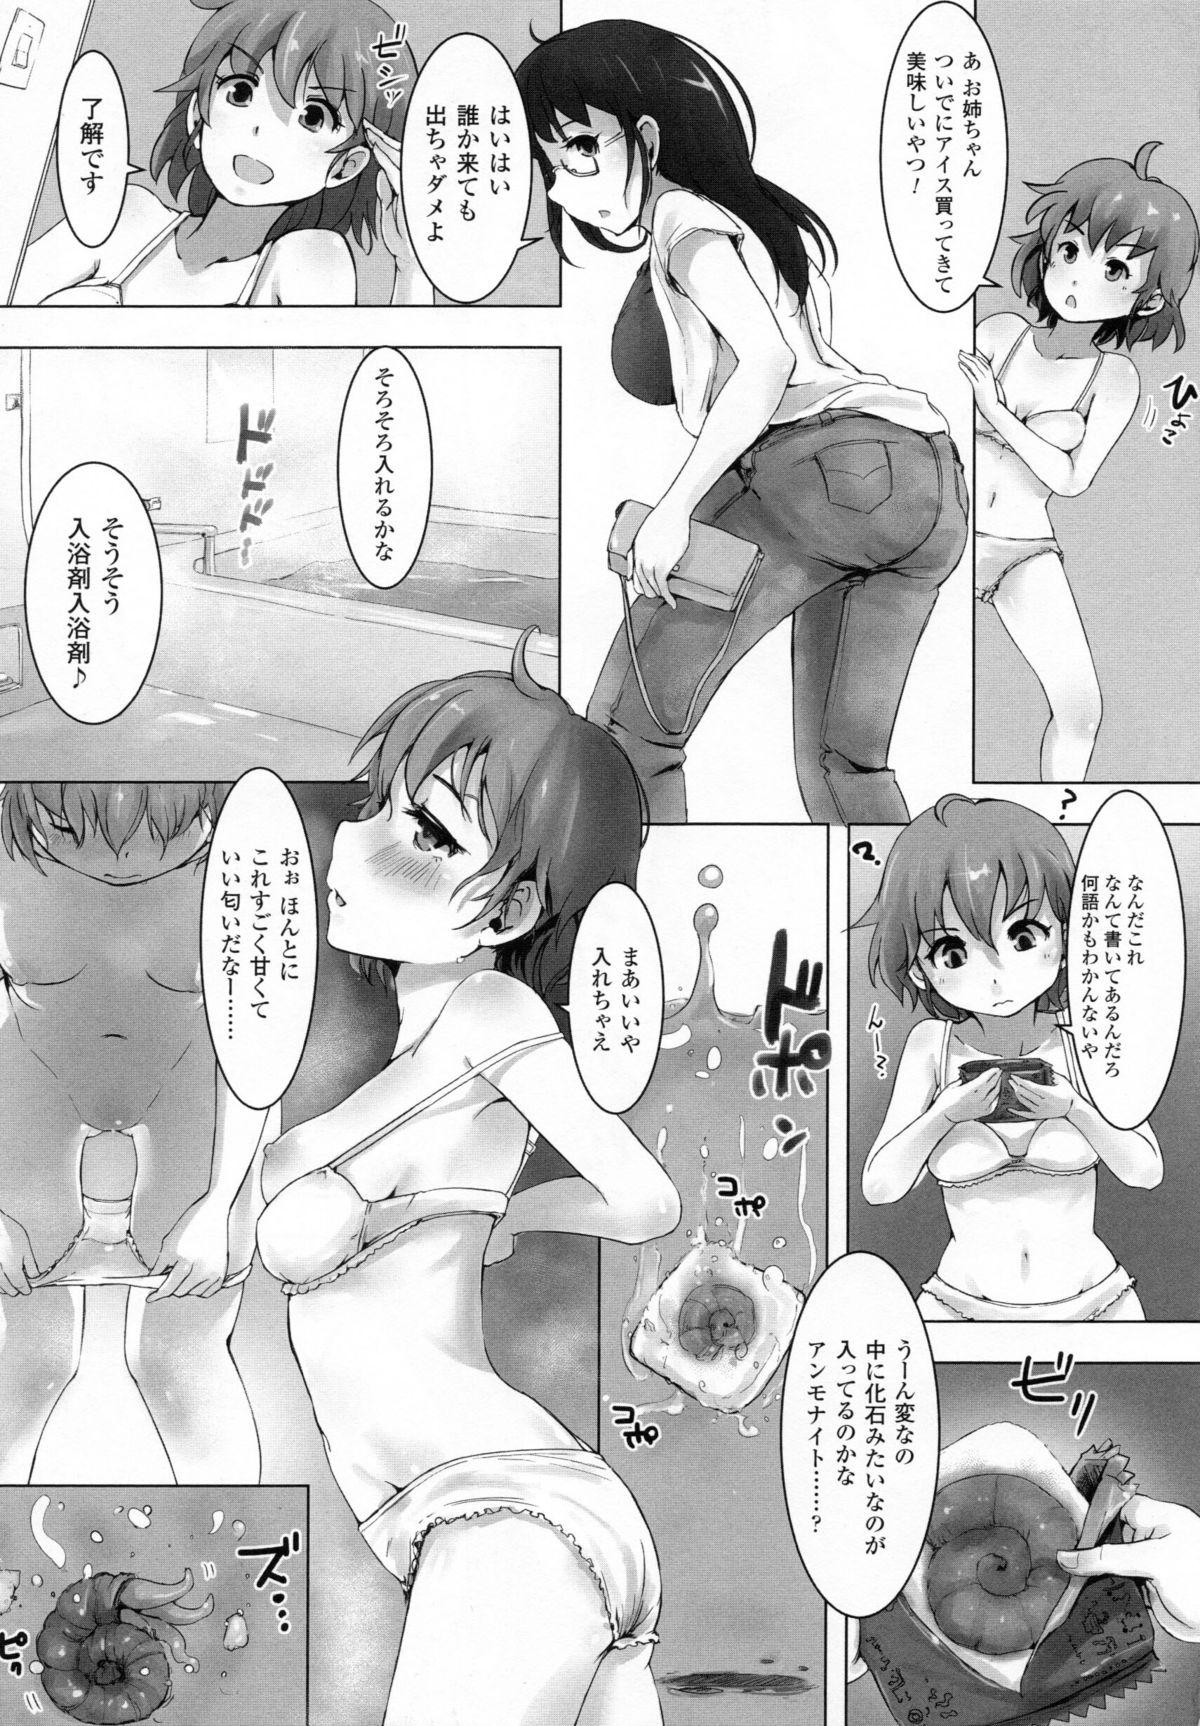 Innocent 2D Dream Comic Magazine Moshimo Gendai Nippon ni Shokushu ga Arawaretara Retro - Page 9